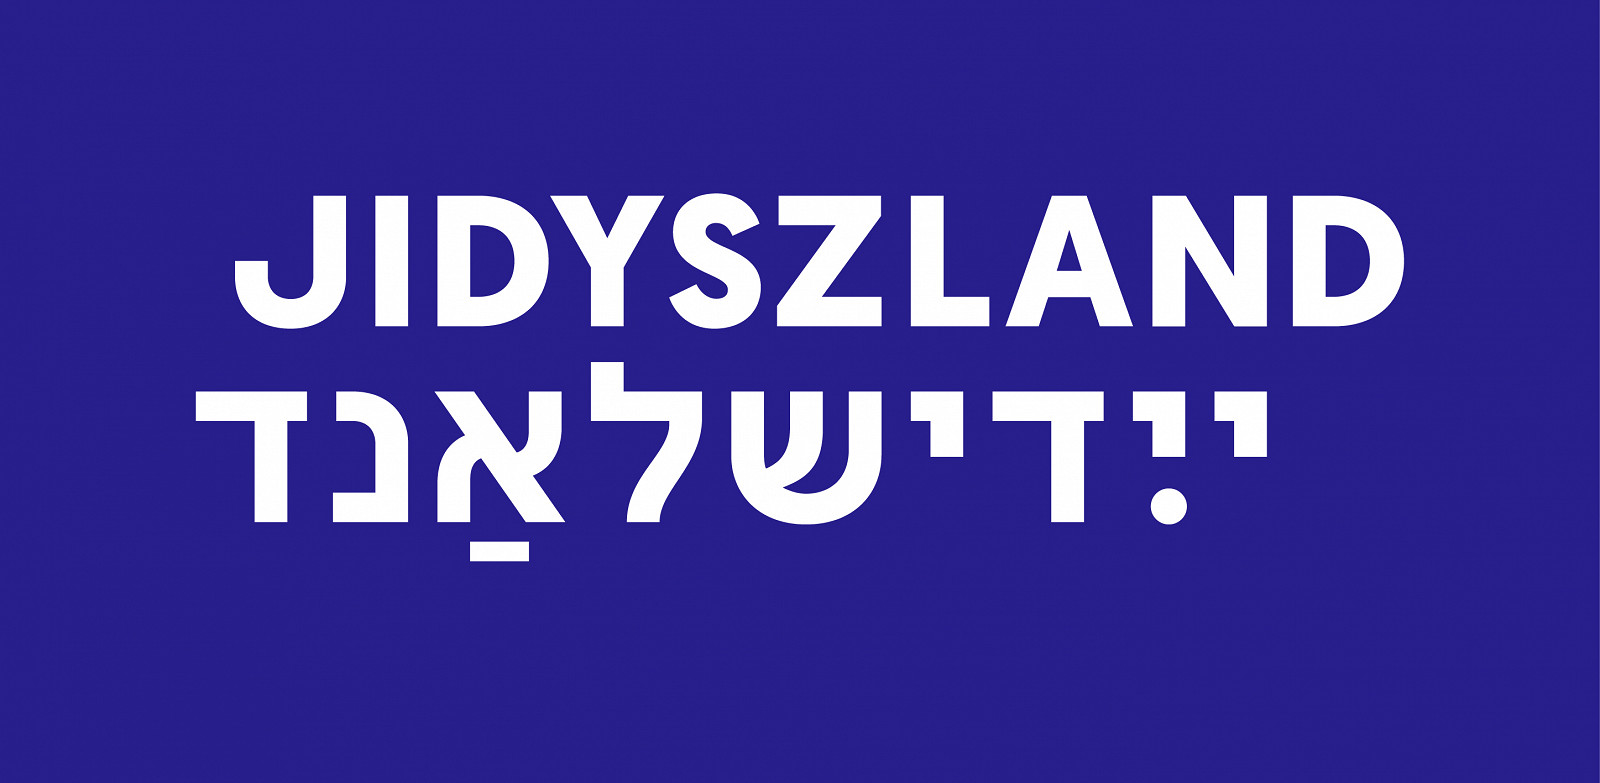 jidyszland-logotypt-rgb_poziom-WH-BLUE.jpg [228.54 KB]